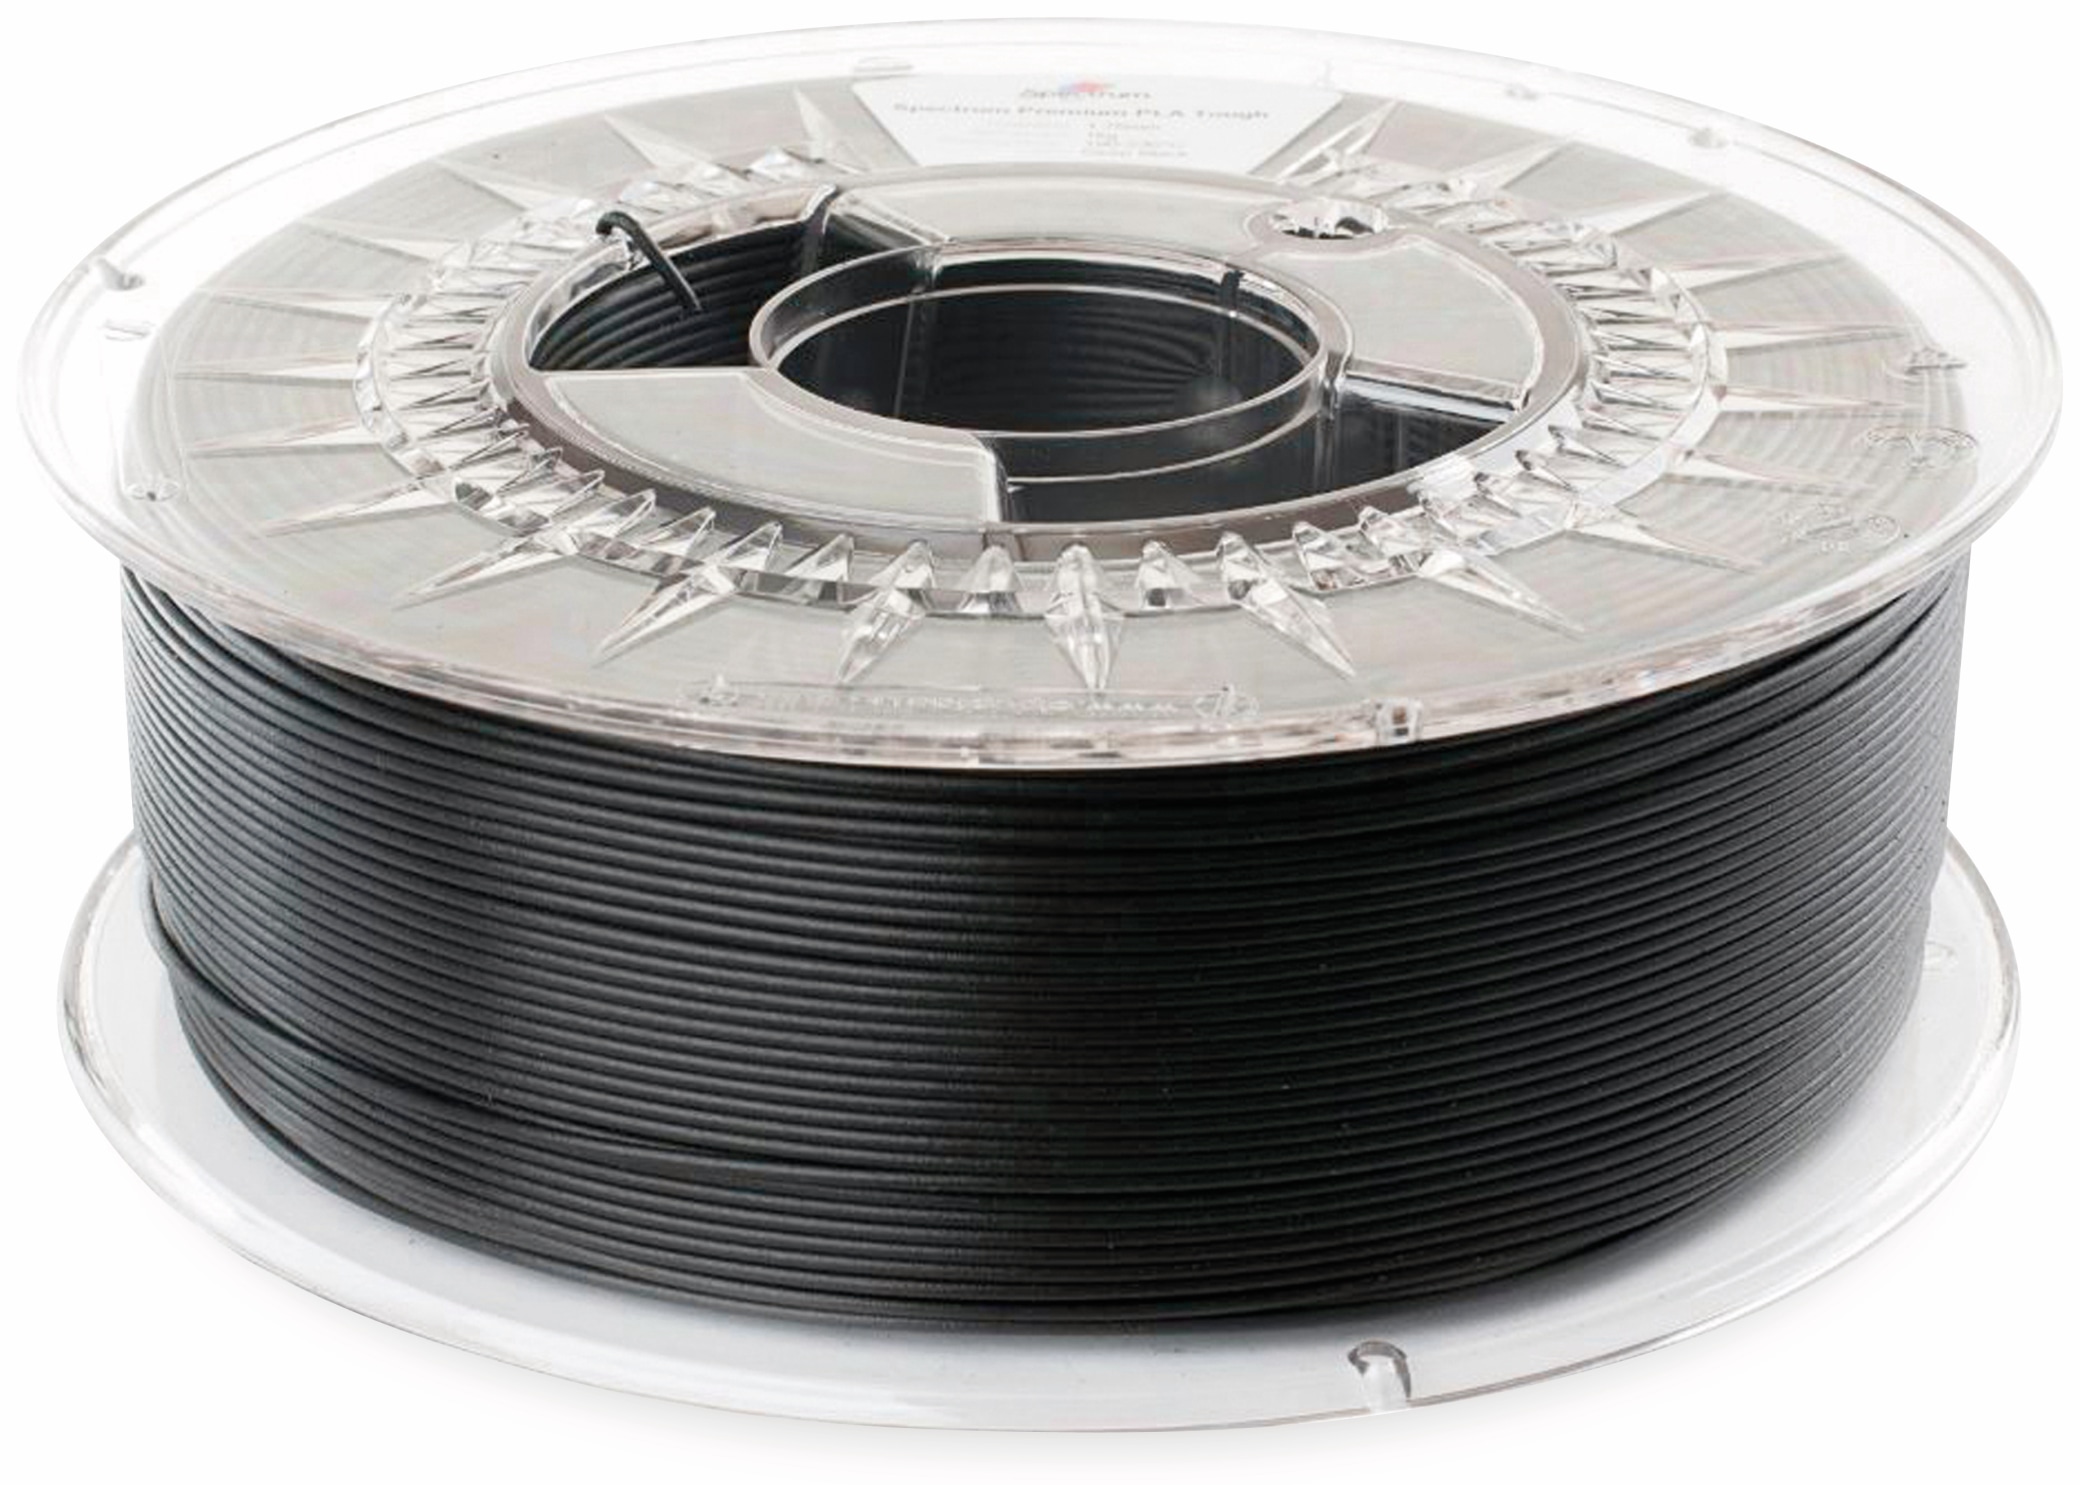 SPECTRUM 3D Filament smart ABS 1.75mm DEEP schwarz 1kg